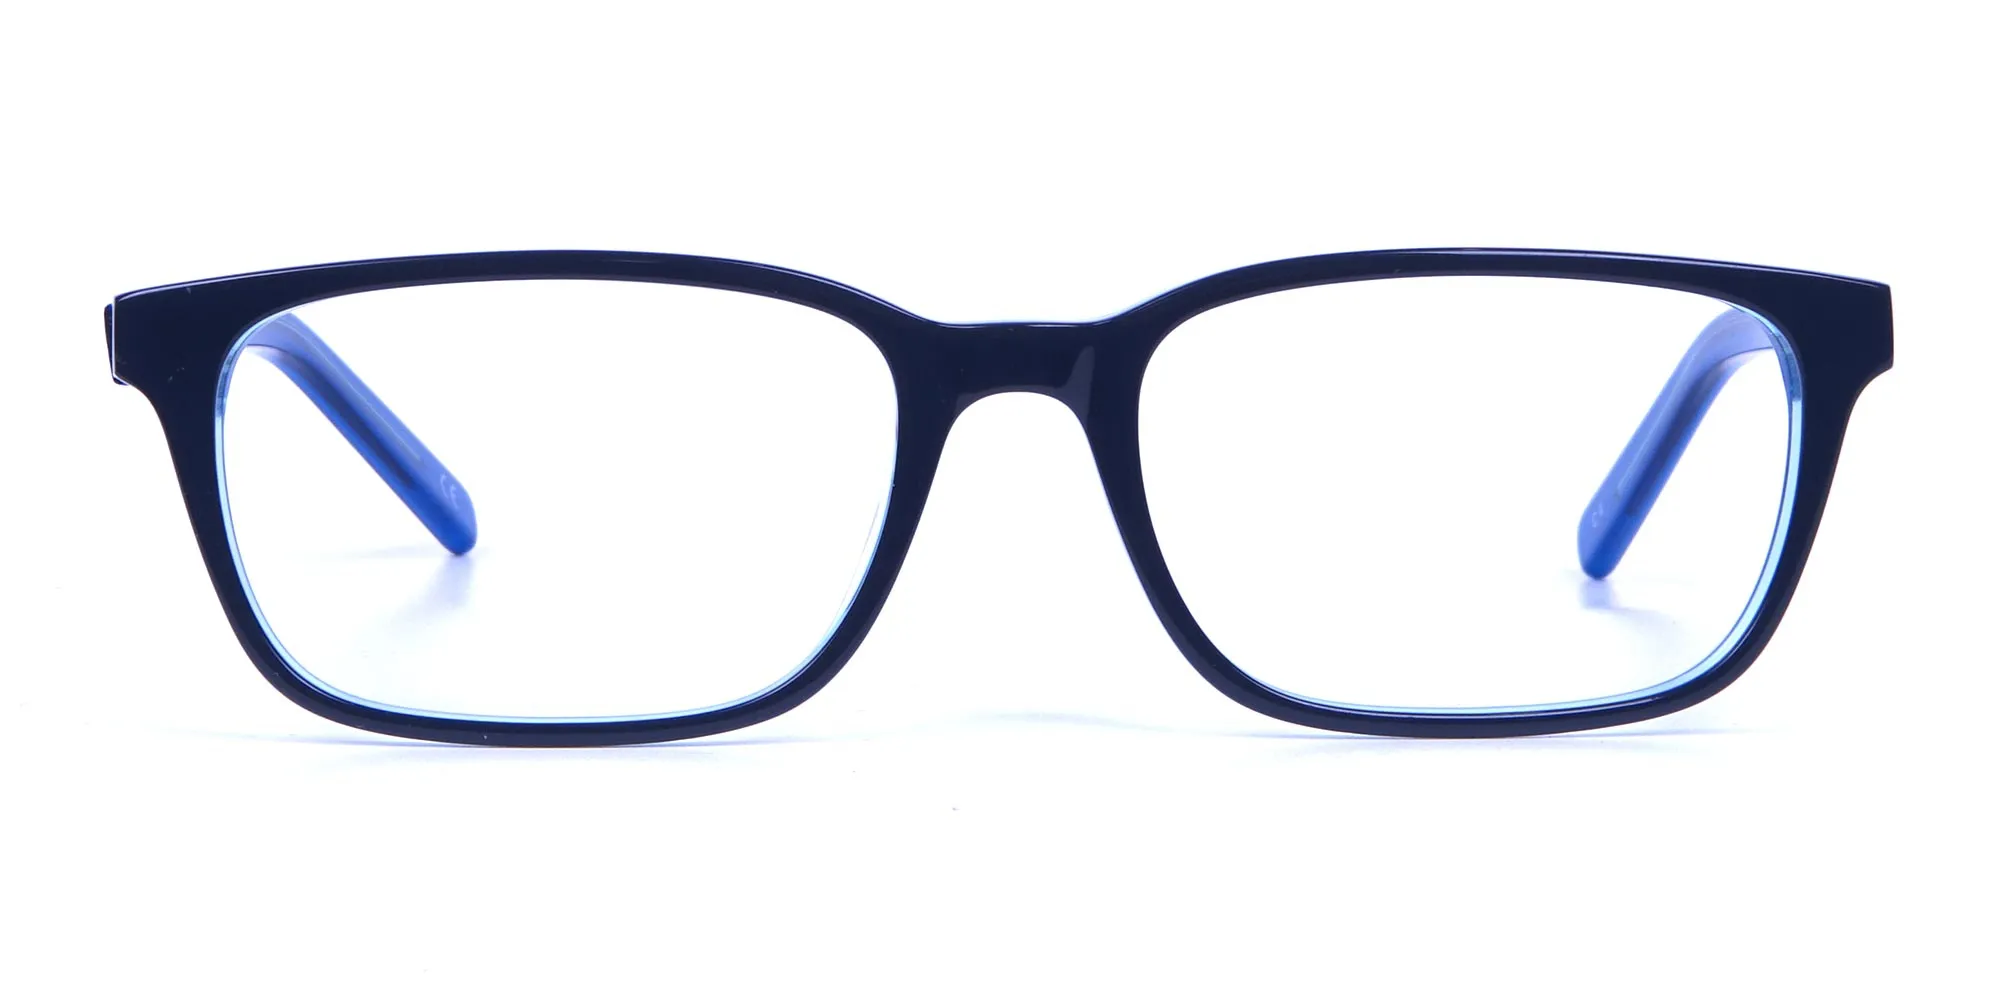 Rectangular Glasses for Men and Women - 1